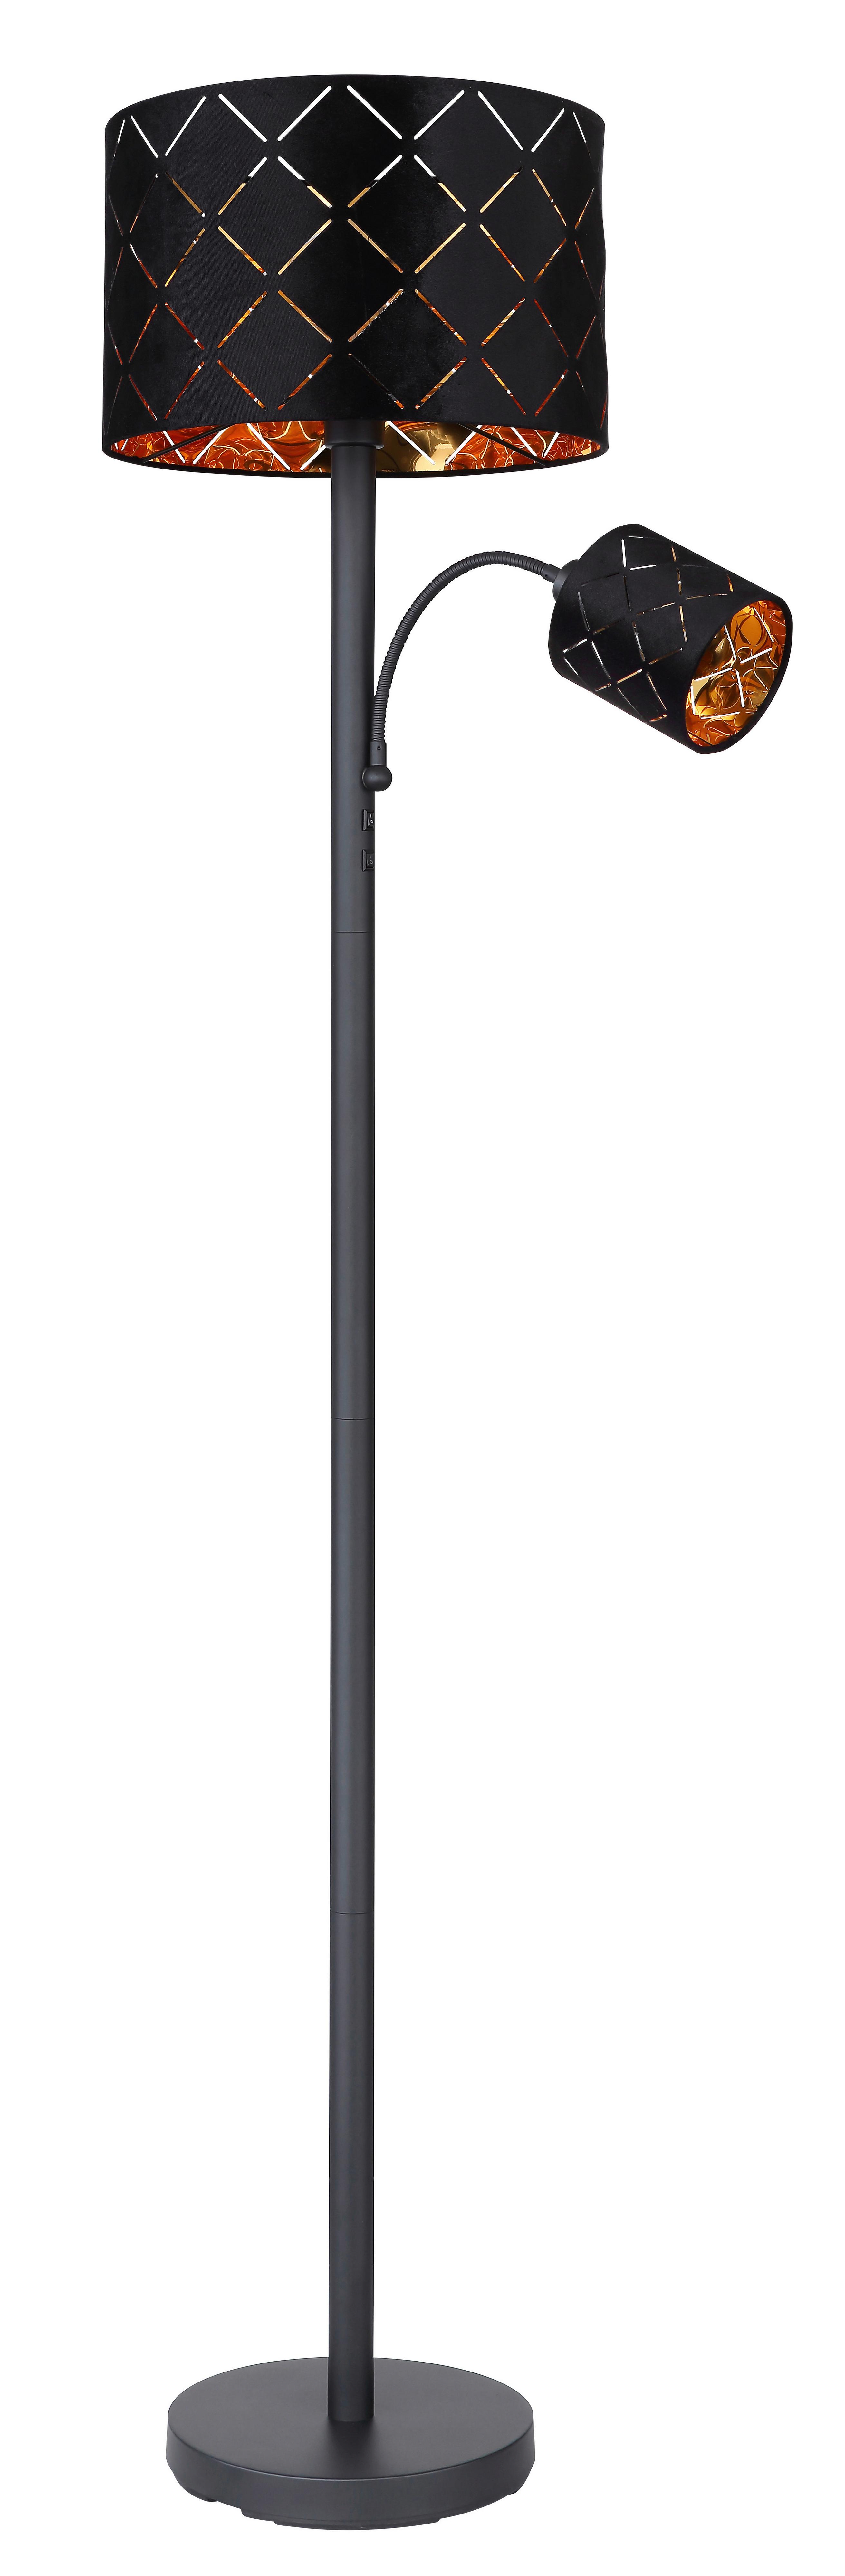 Stojací Lampa Manfried, 35/162cm - černá, Moderní, kov/textil (35/162cm) - Modern Living